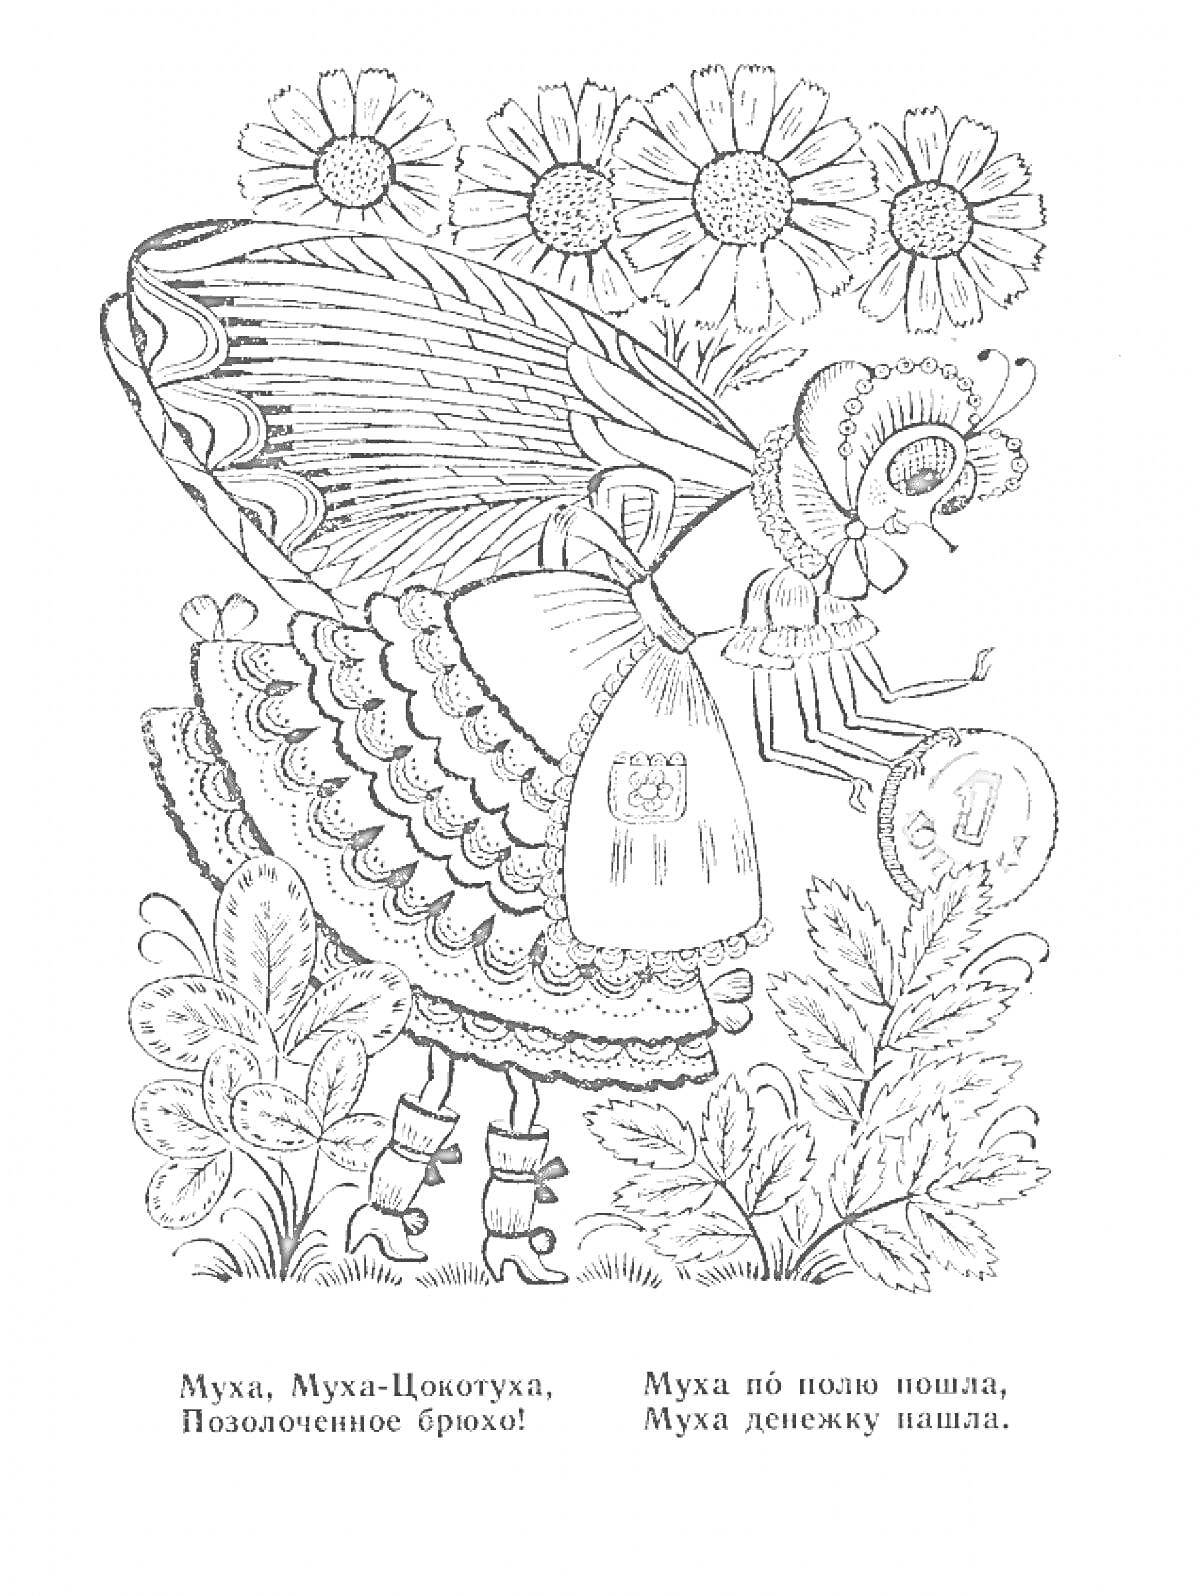 Муха-Цокотуха с монетой на фоне ромашек и листьев